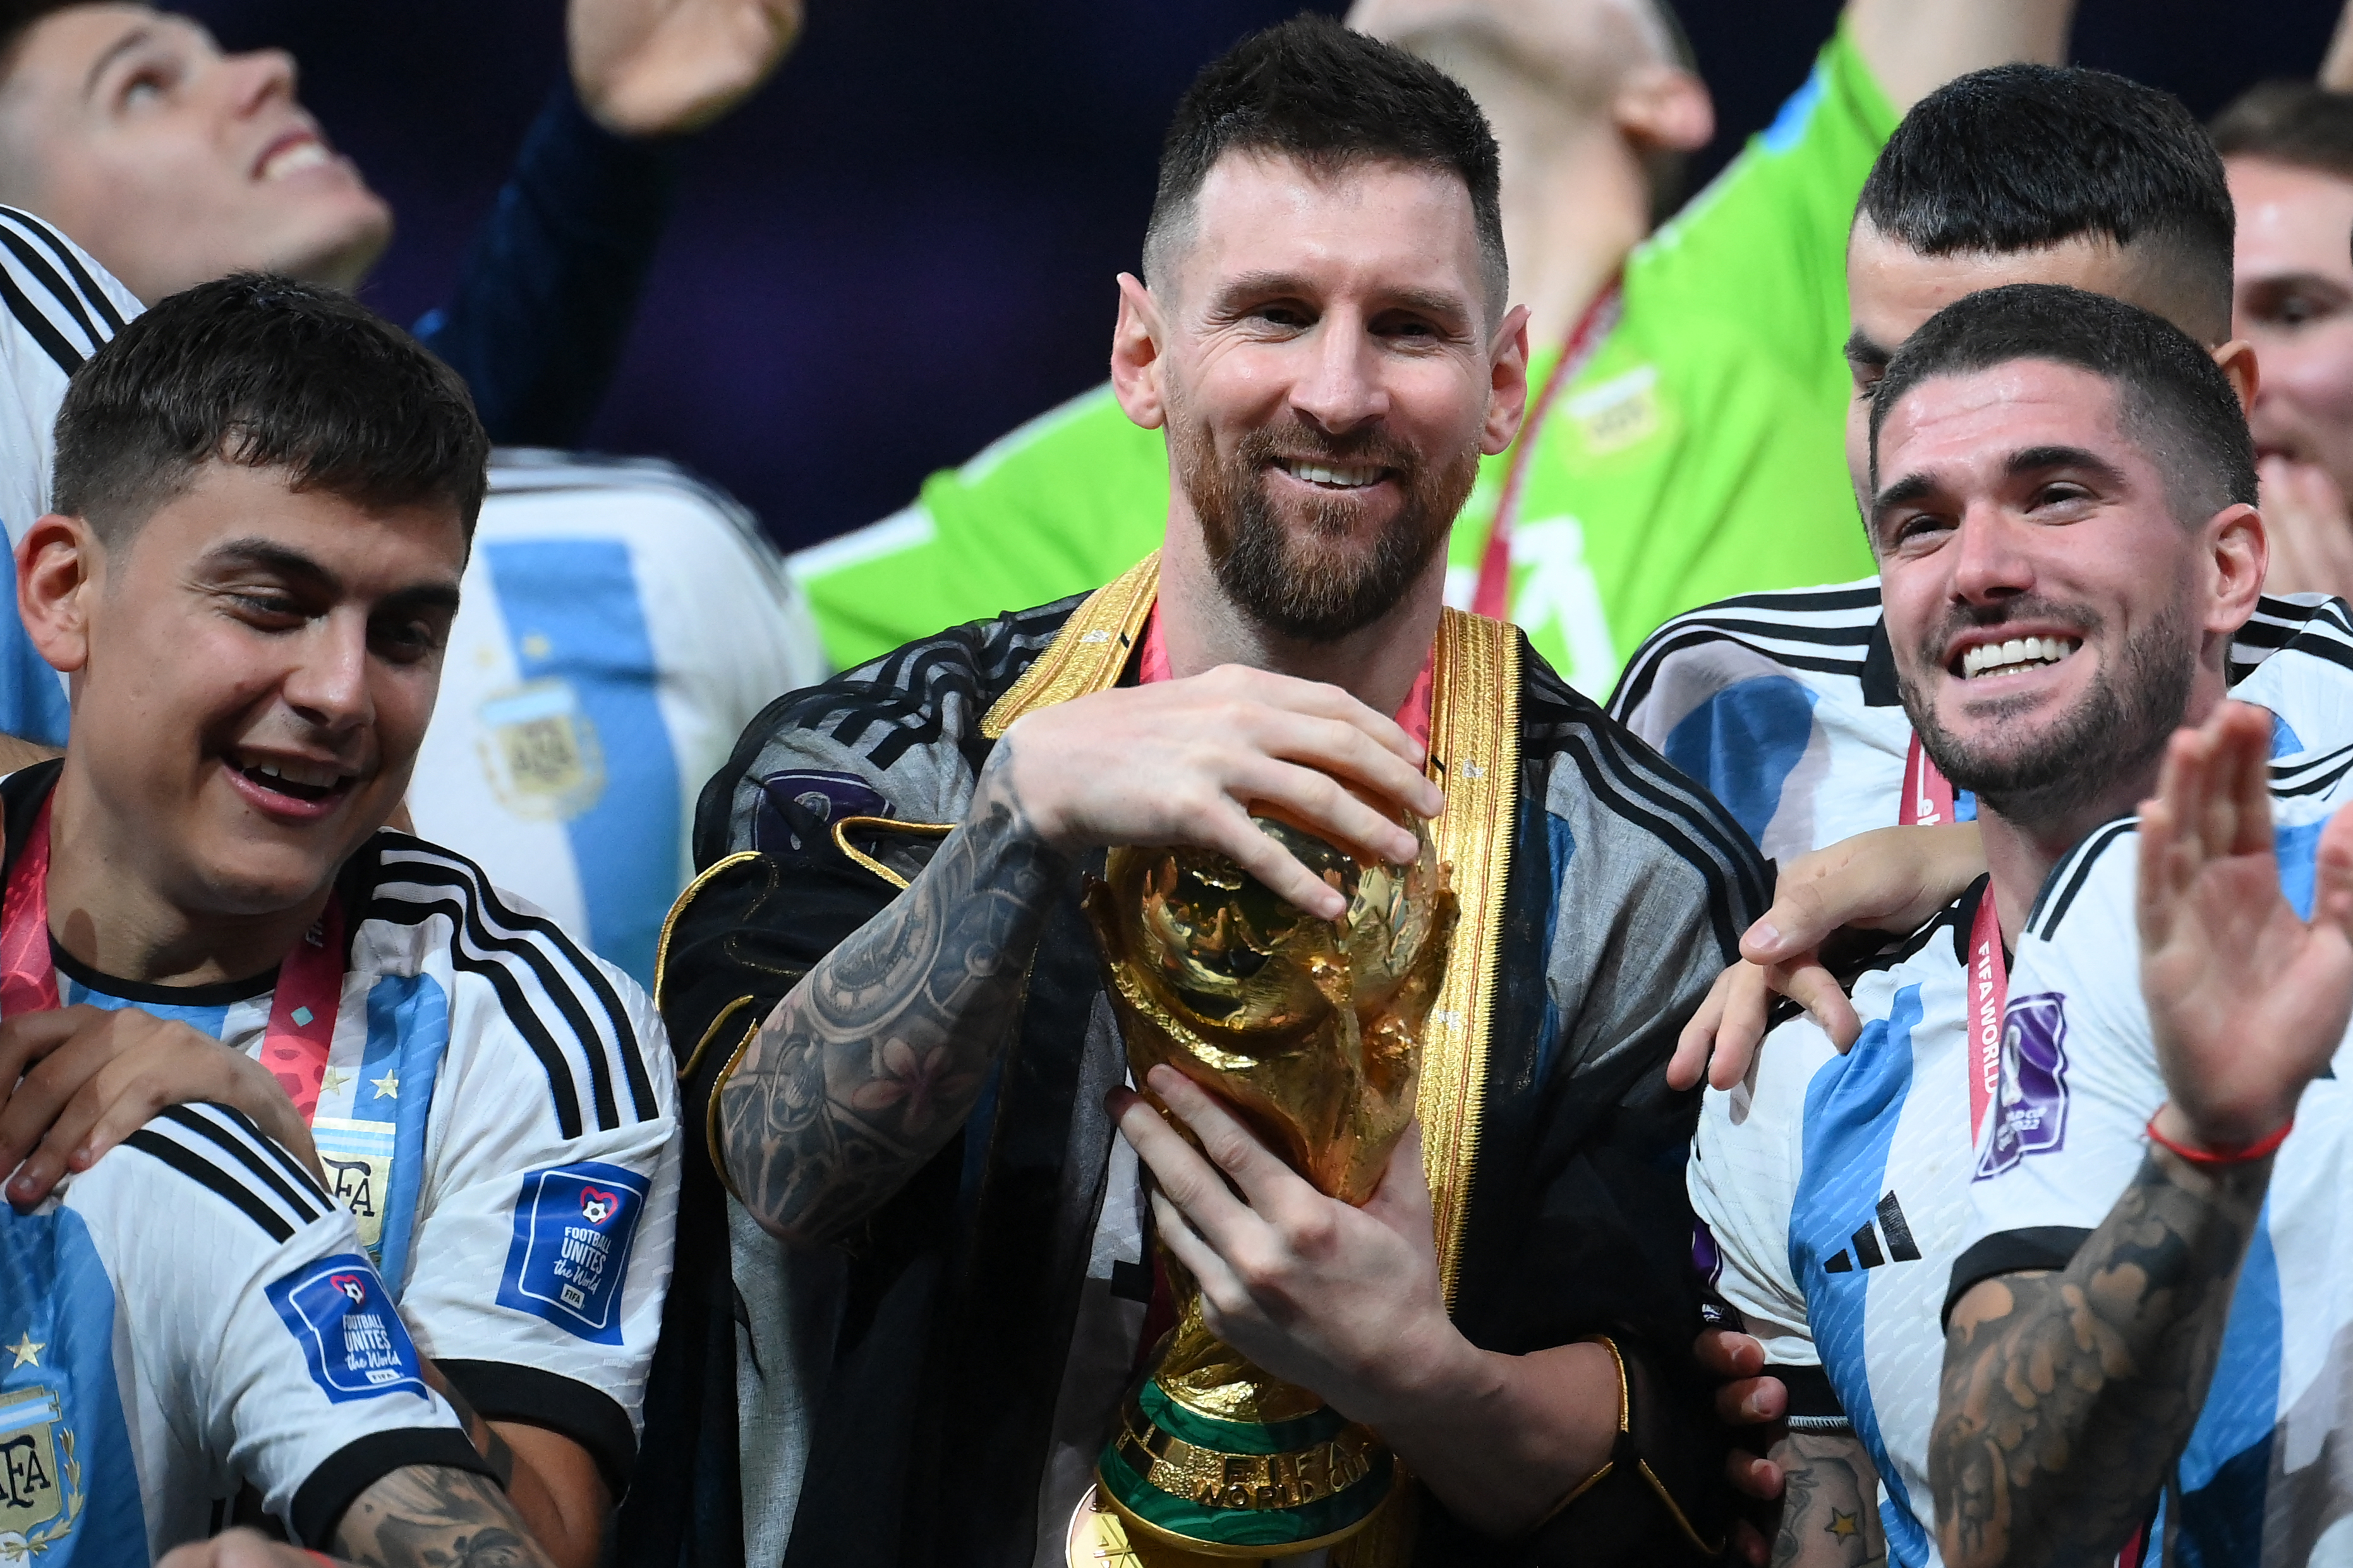 Messi, Tổng thống Argentina: Hình ảnh tiền đạo Barcelona Messi và Tổng thống Argentina sẽ đem lại cho bạn những cảm xúc ấn tượng về mối quan hệ thân thiết giữa chính trị và thể thao trong đất nước Argentina.